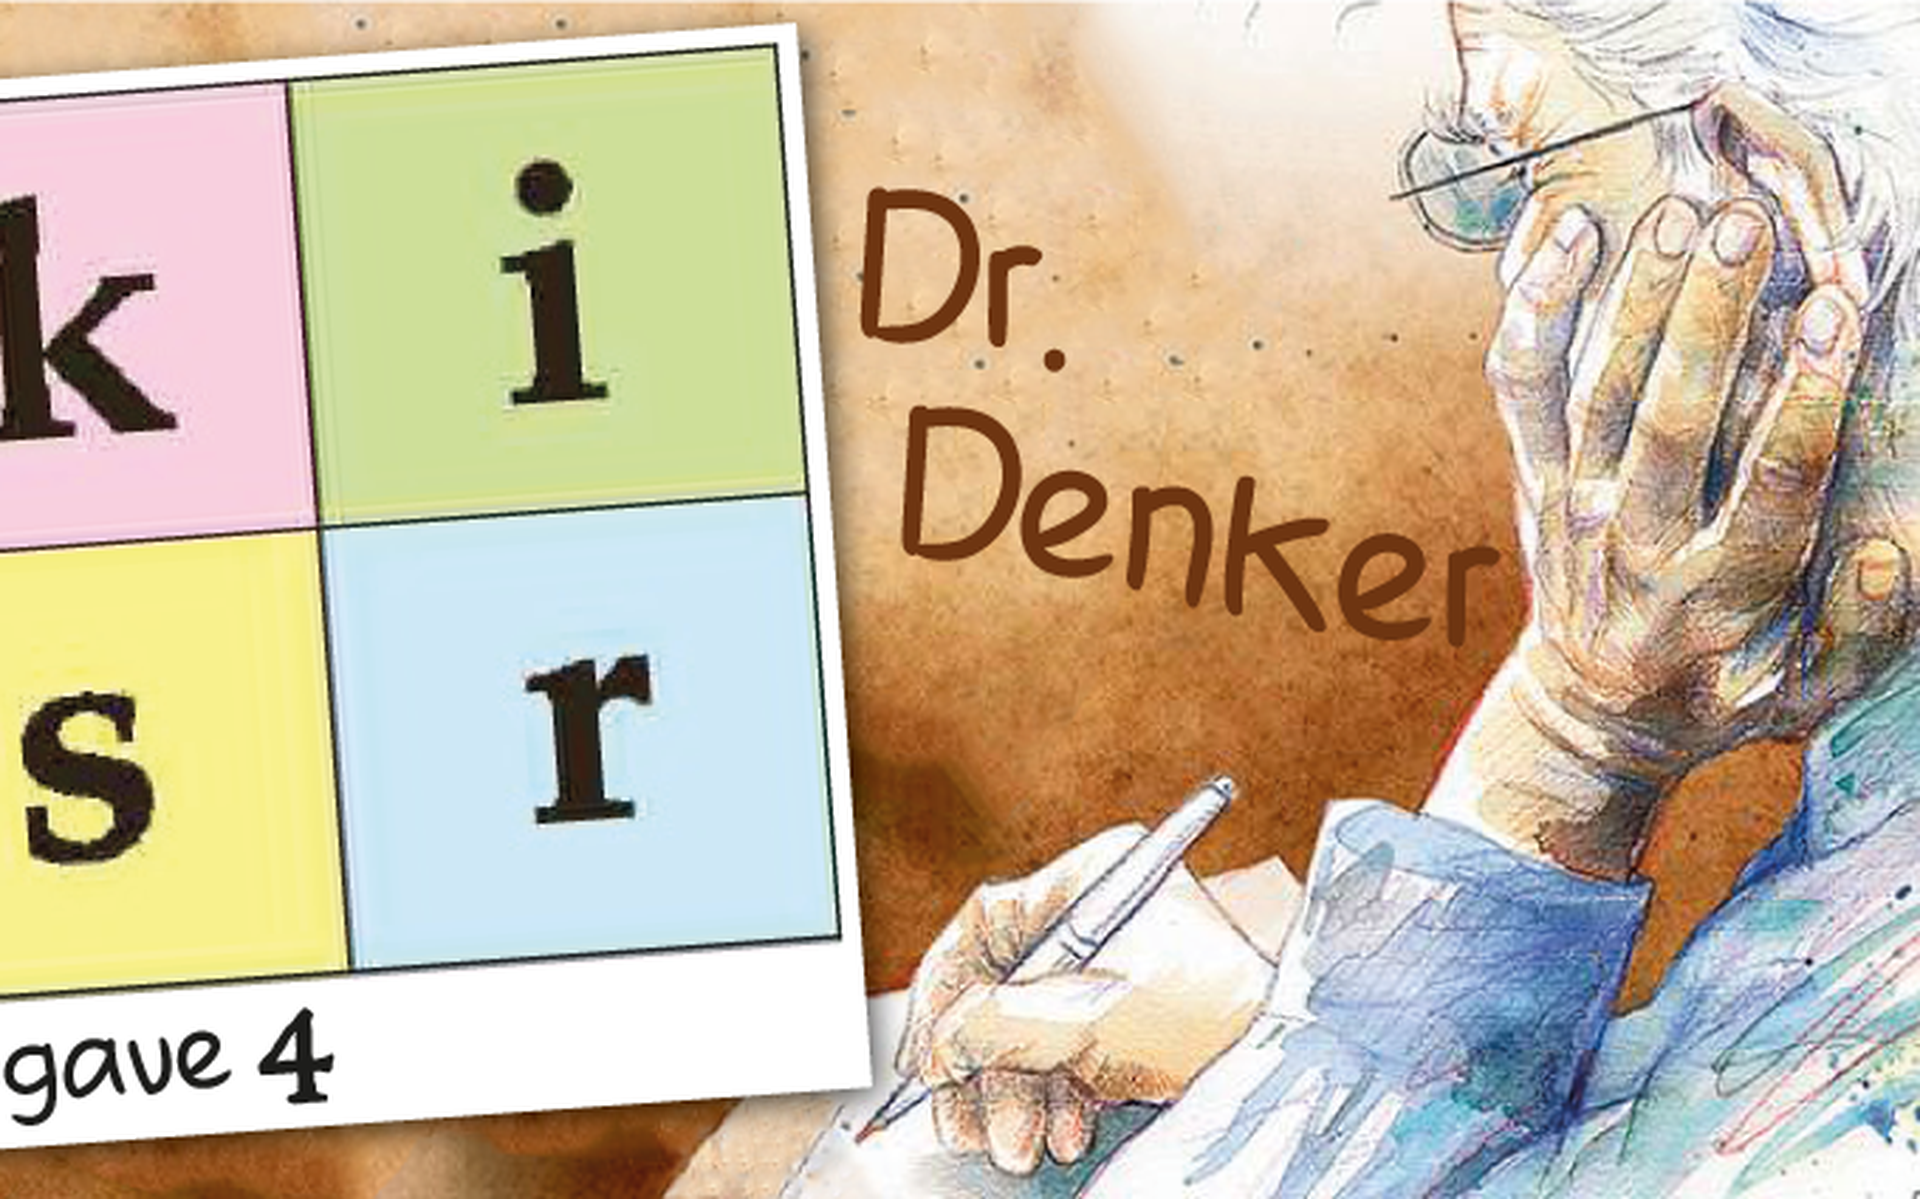 Dr. Denker.